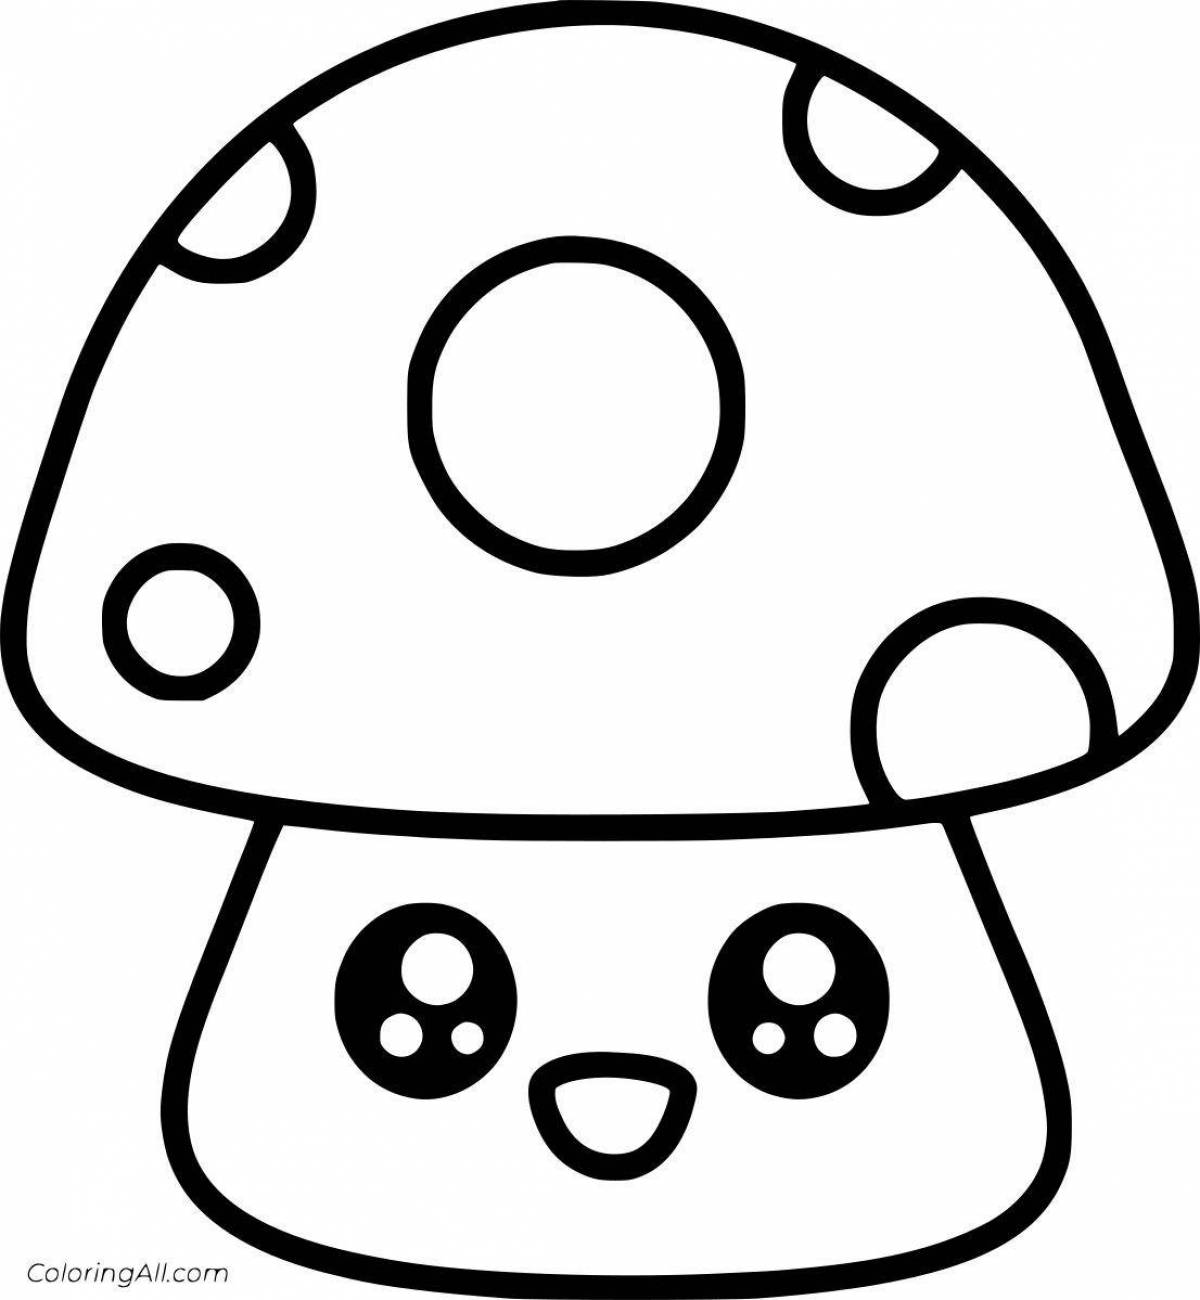 Яркая раскраска грибов для детей 3-4 лет